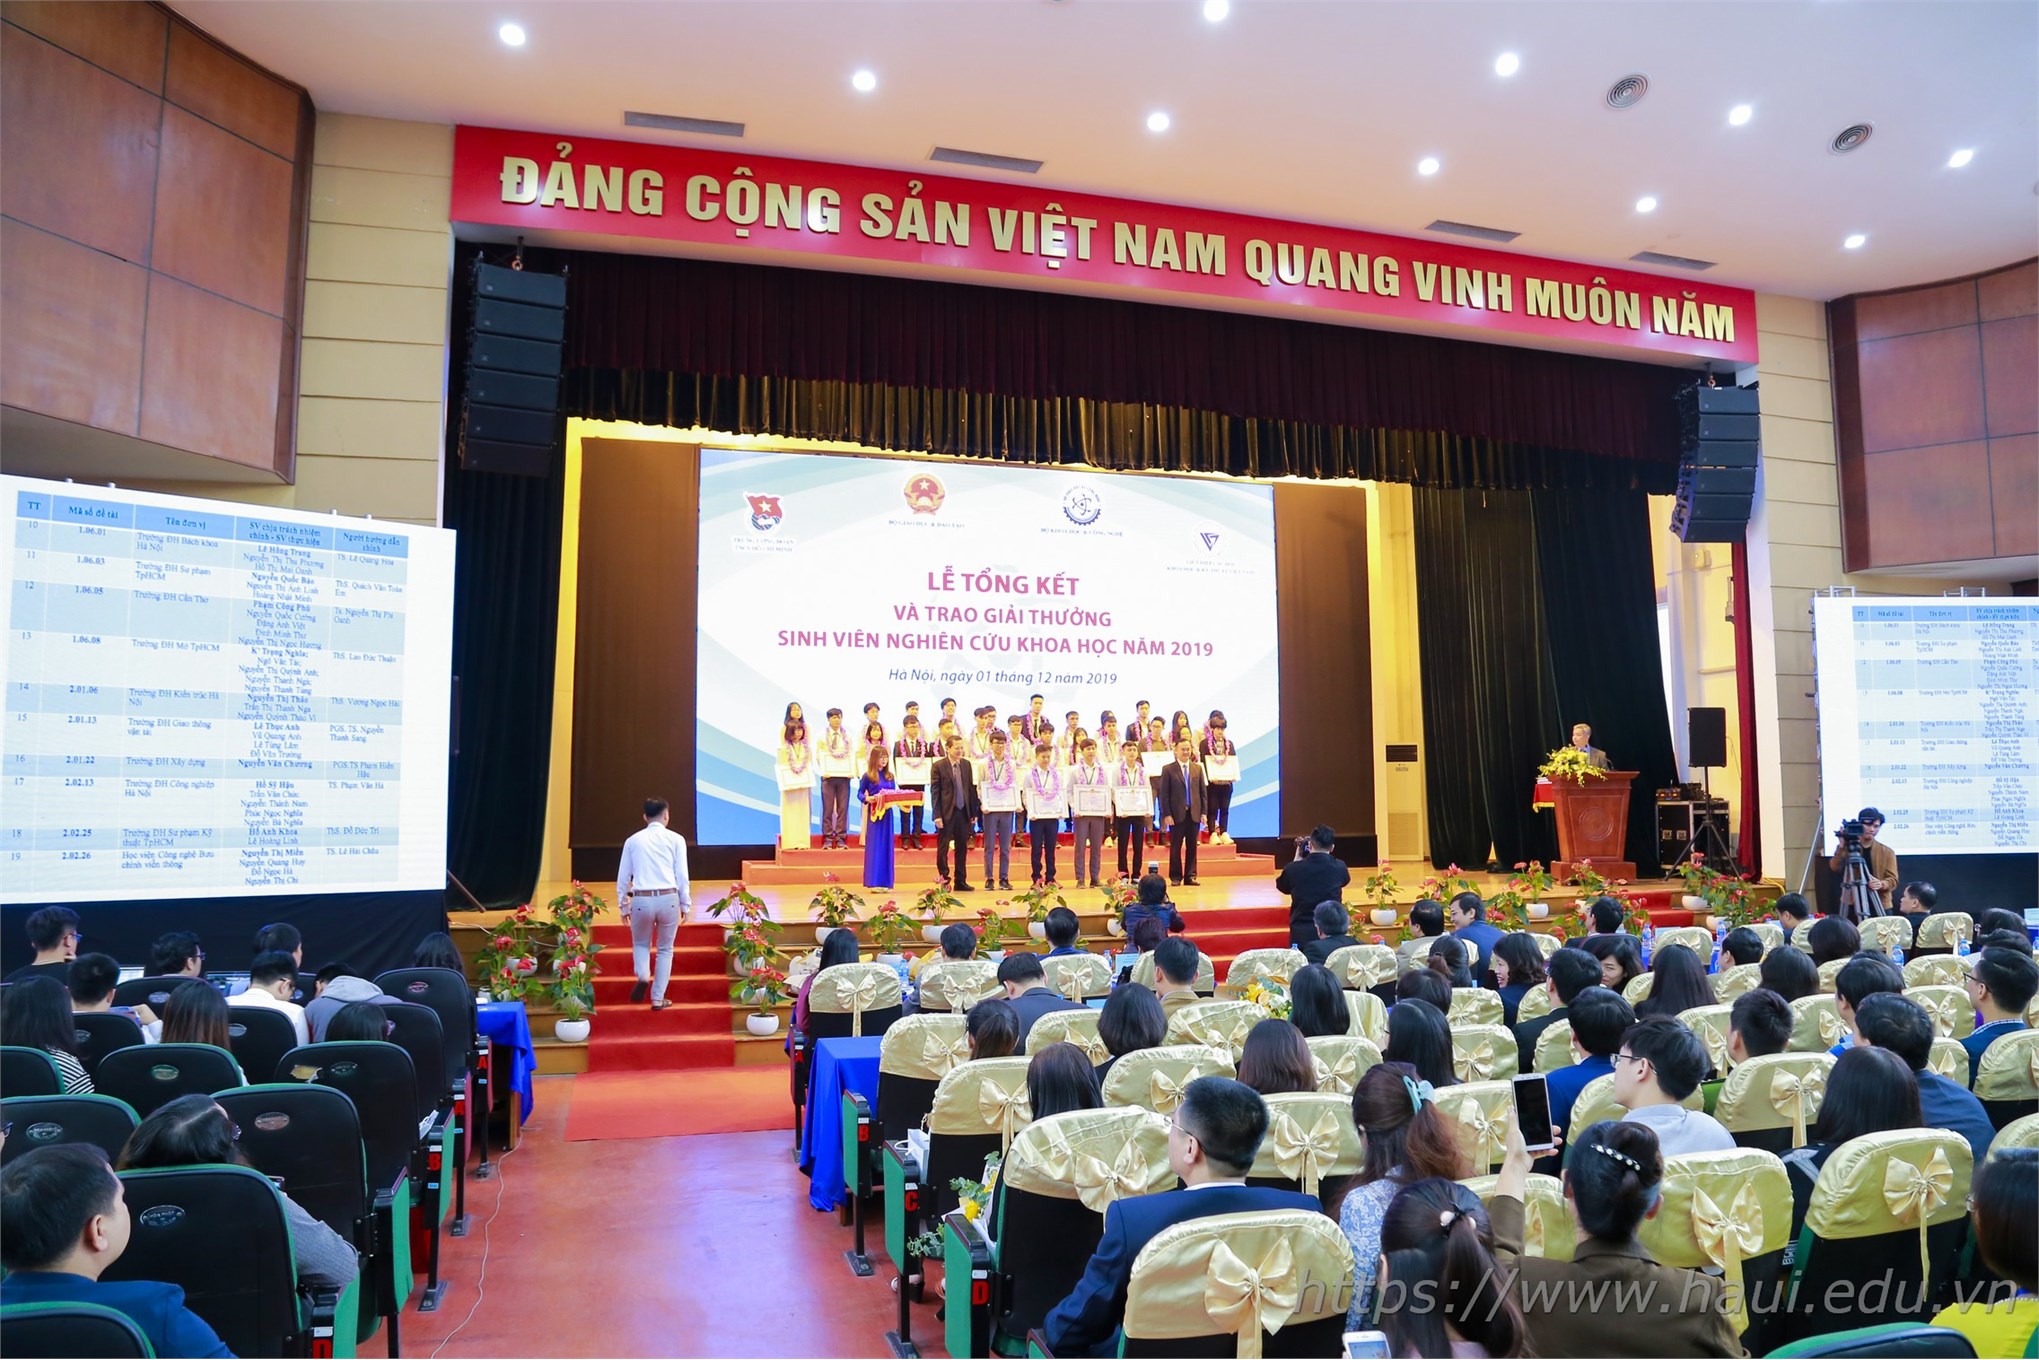 Sinh viên Đại học Công nghiệp Hà Nội đạt giải Ba “Sinh viên nghiên cứu khoa học” năm 2019